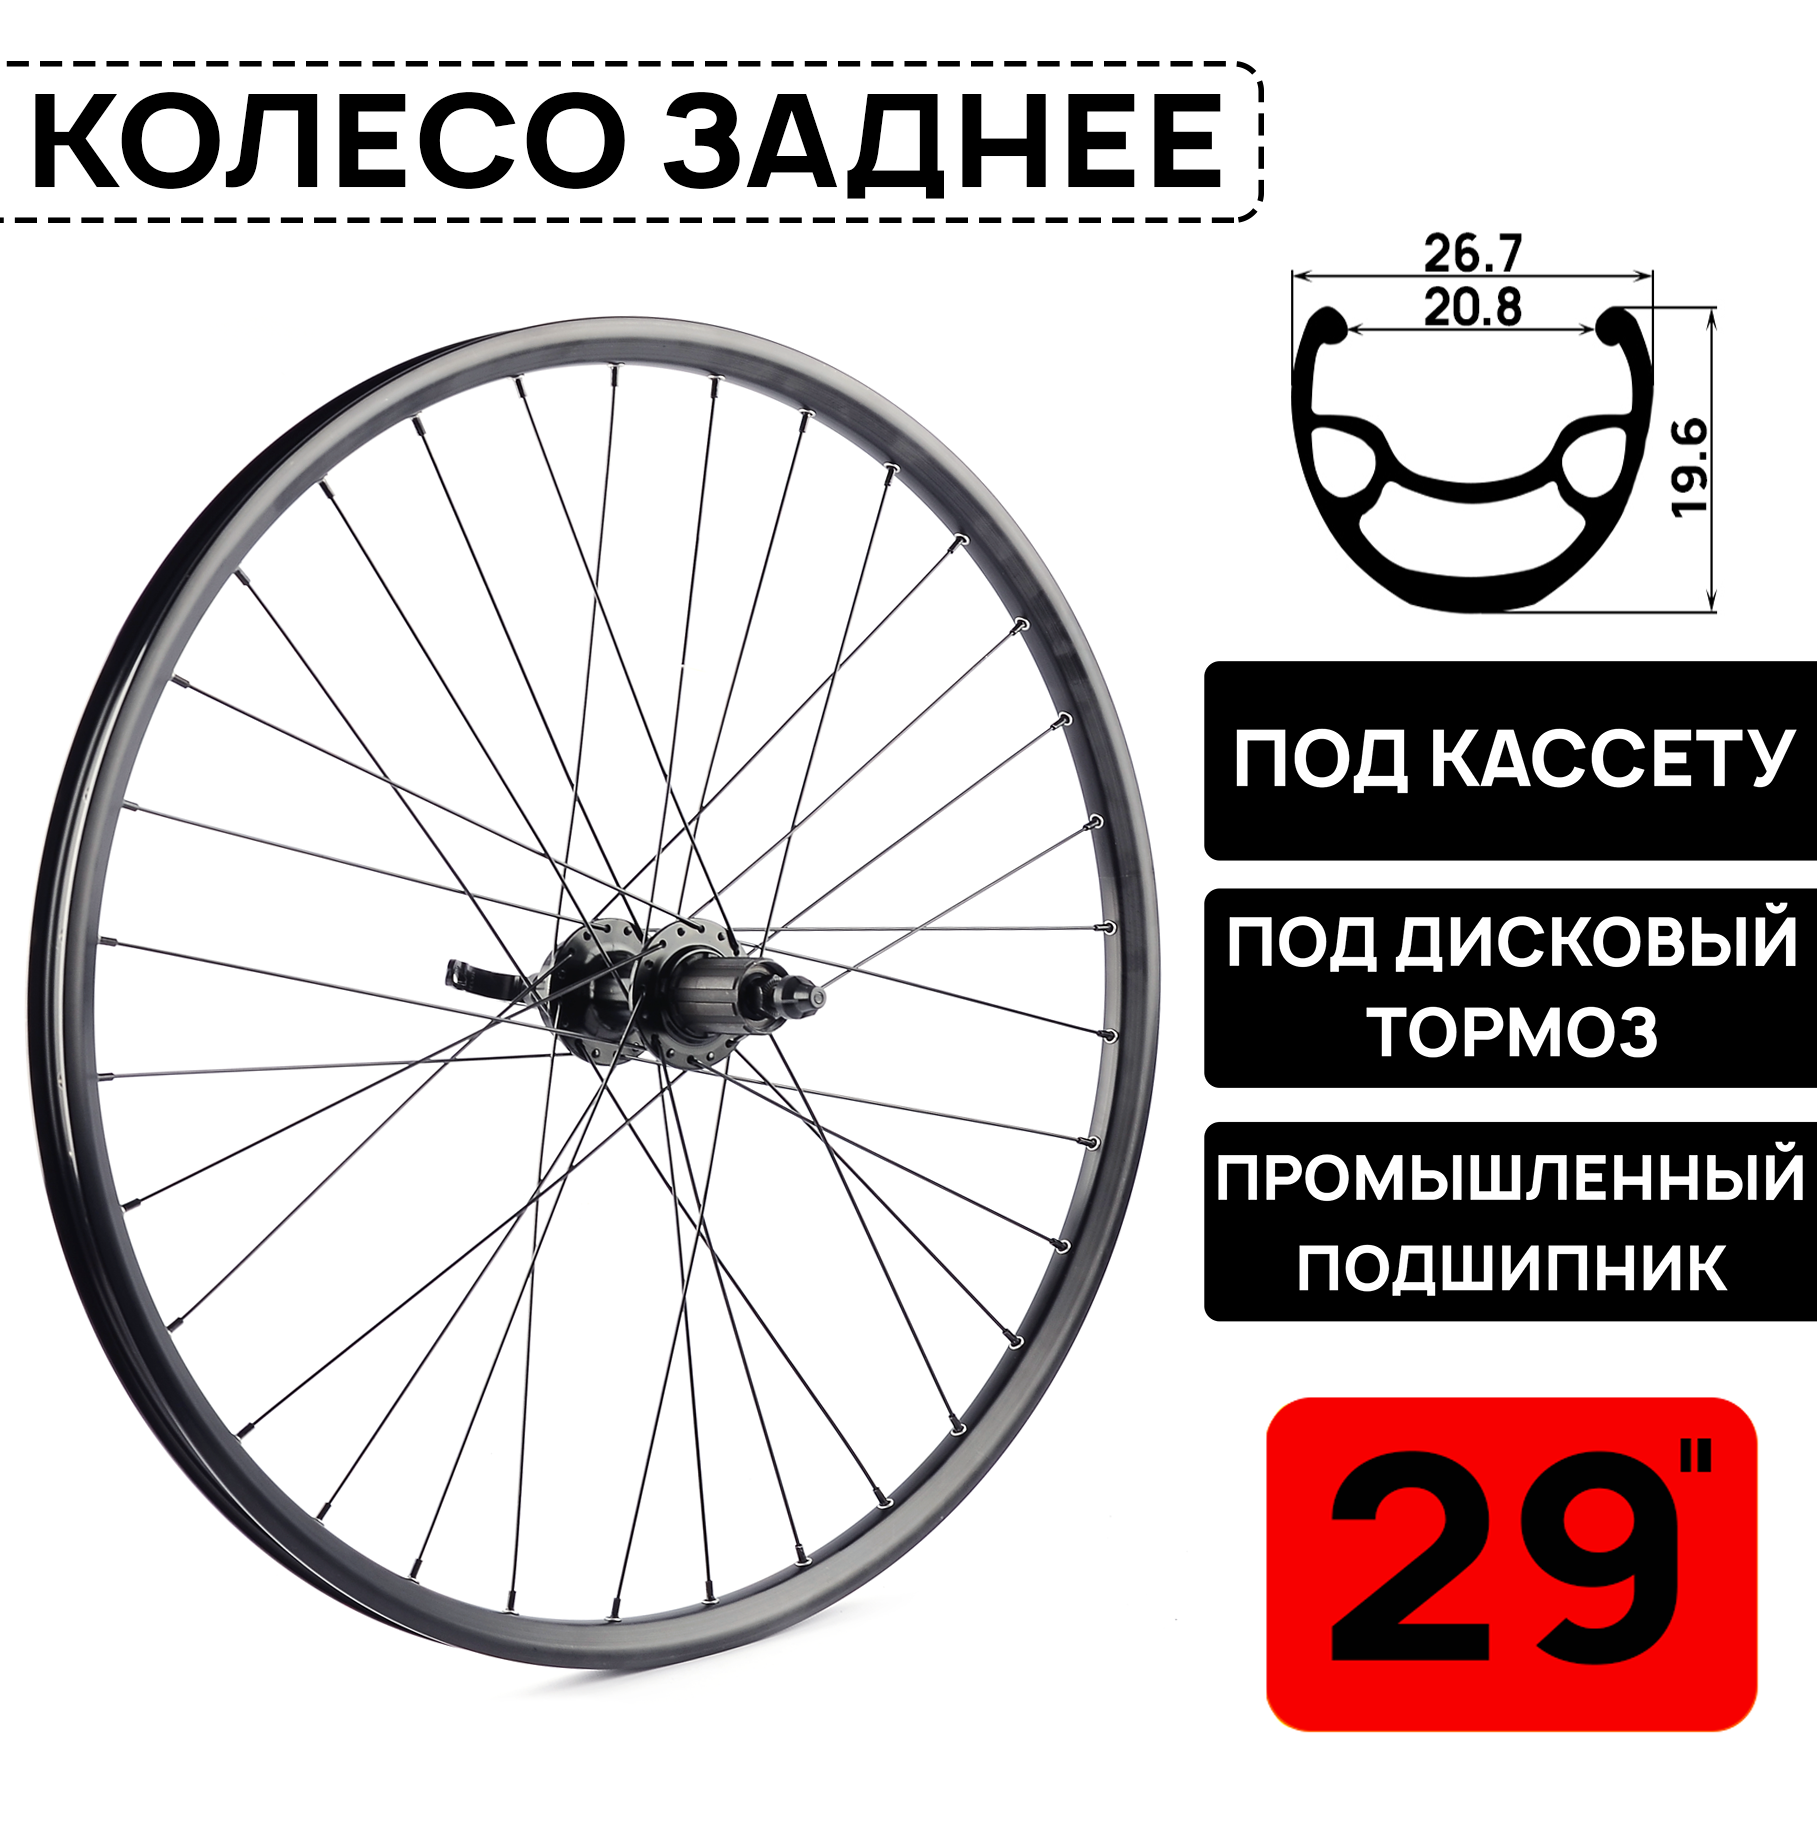 Колесо заднее для велосипеда MTB XC PRO 29", под дисковый тормоз, втулка WANGZHENG с пром. подшипниками, под кассету 8-10 ск, под эксцентрик, черное